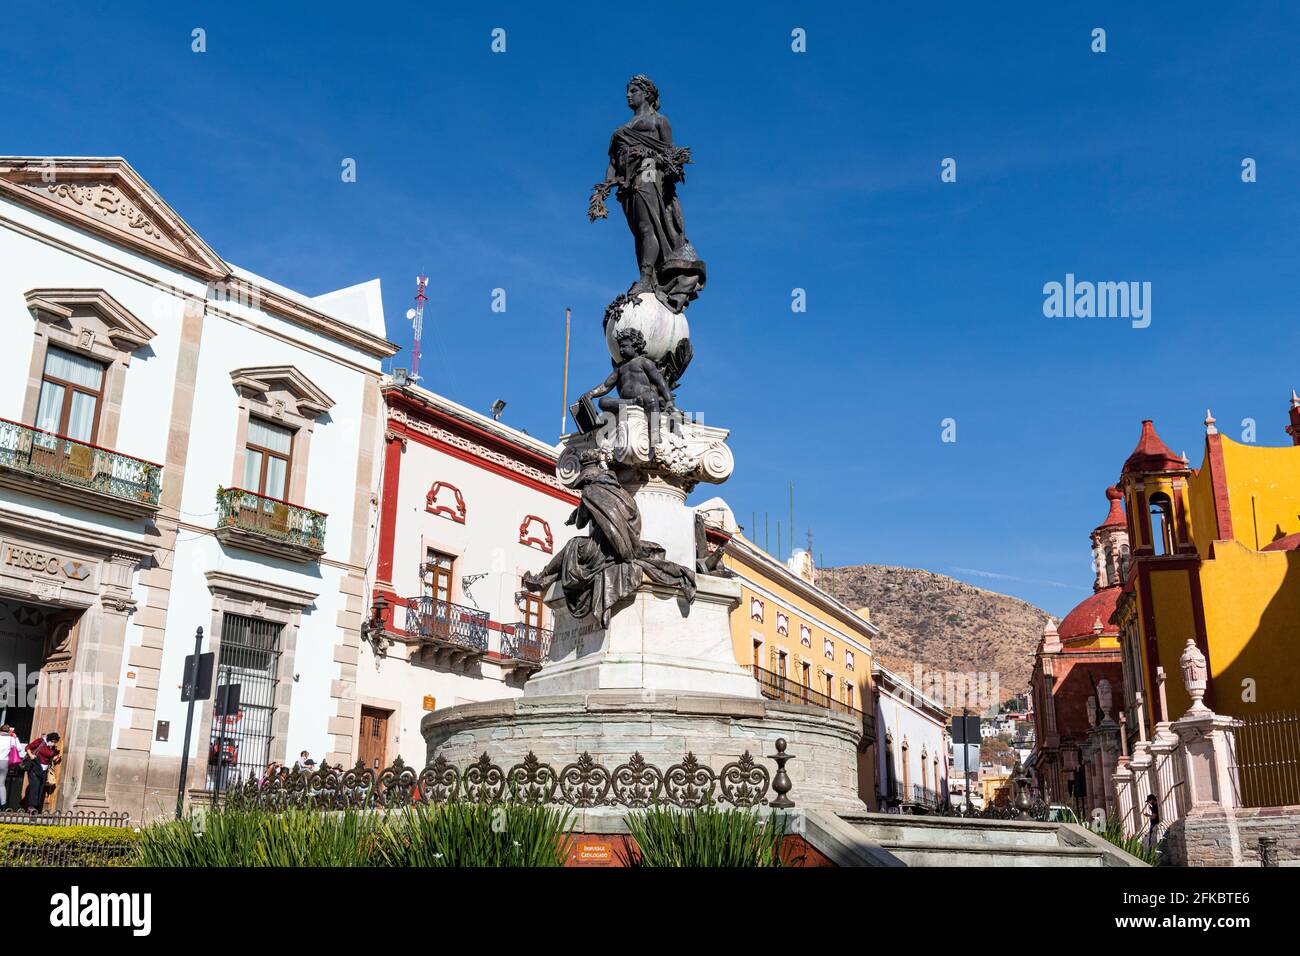 Monumento a La Paz in front of the Basilica Colegiata de Nuestra Senora, UNESCO World Heritage Site, Guanajuato, Mexico, North America Stock Photo